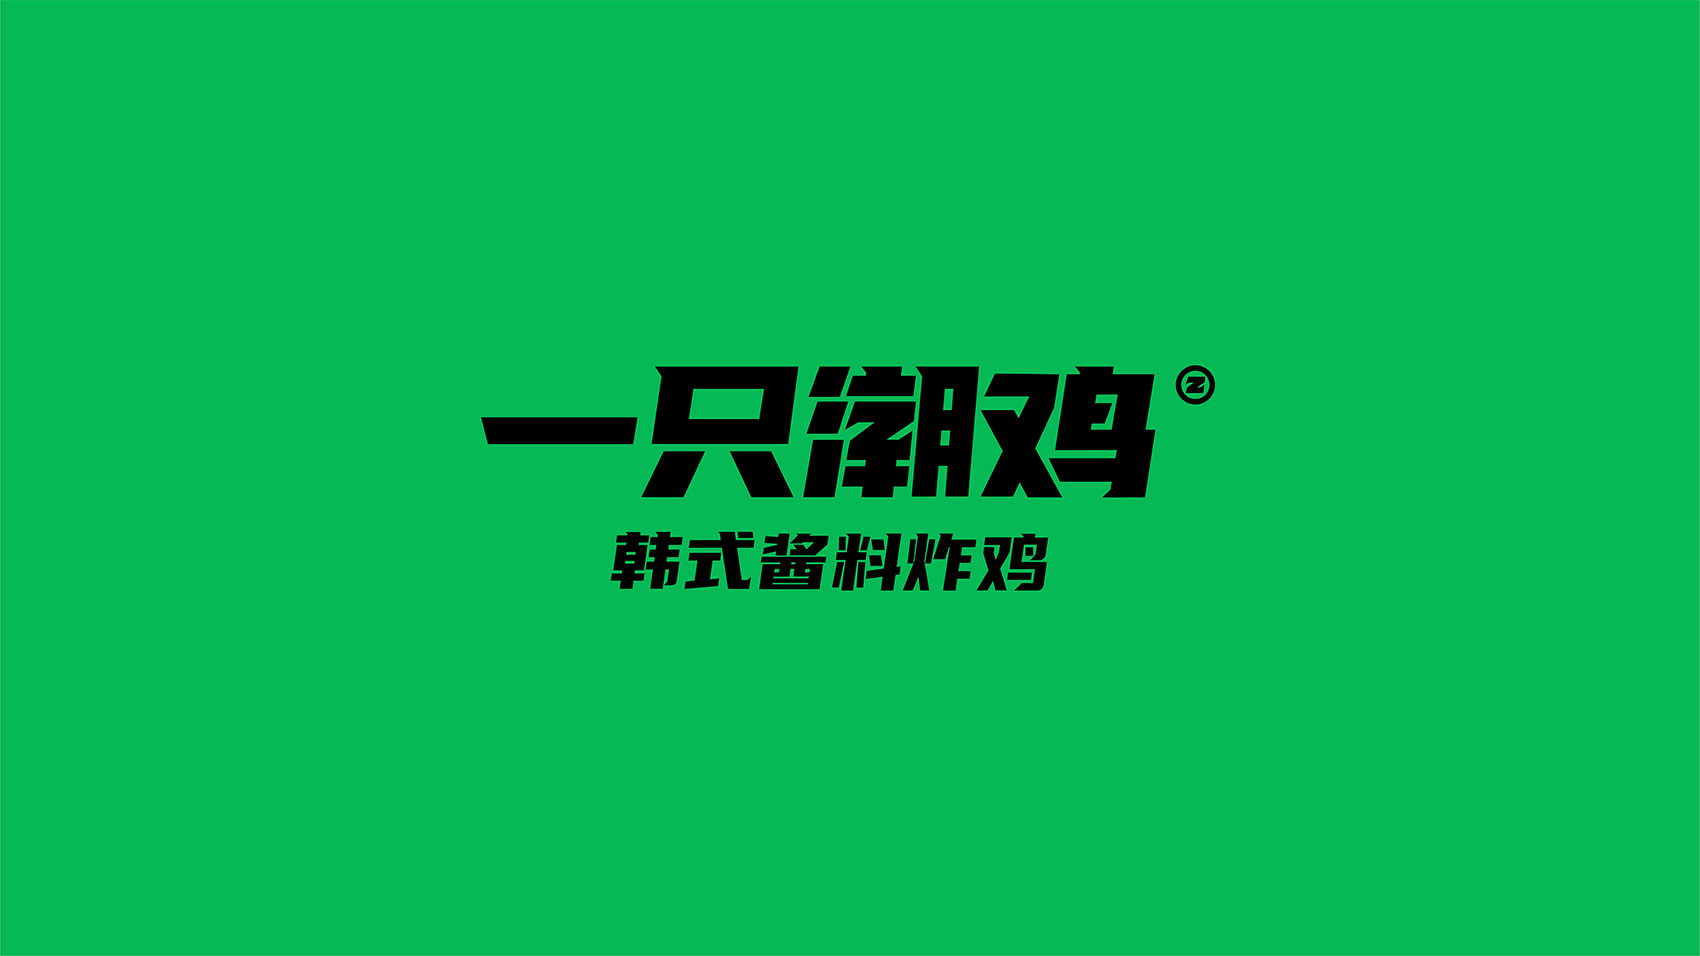 一只潮鸡  北京餐饮logo设计 餐饮VI设计 插画设计  品牌VI设计  北京品牌VI设计公司 北京品牌VI设计 北京VI设计公司 北京品牌设计公司 北京VI设计 北京品牌设计 化妆品牌VI设计